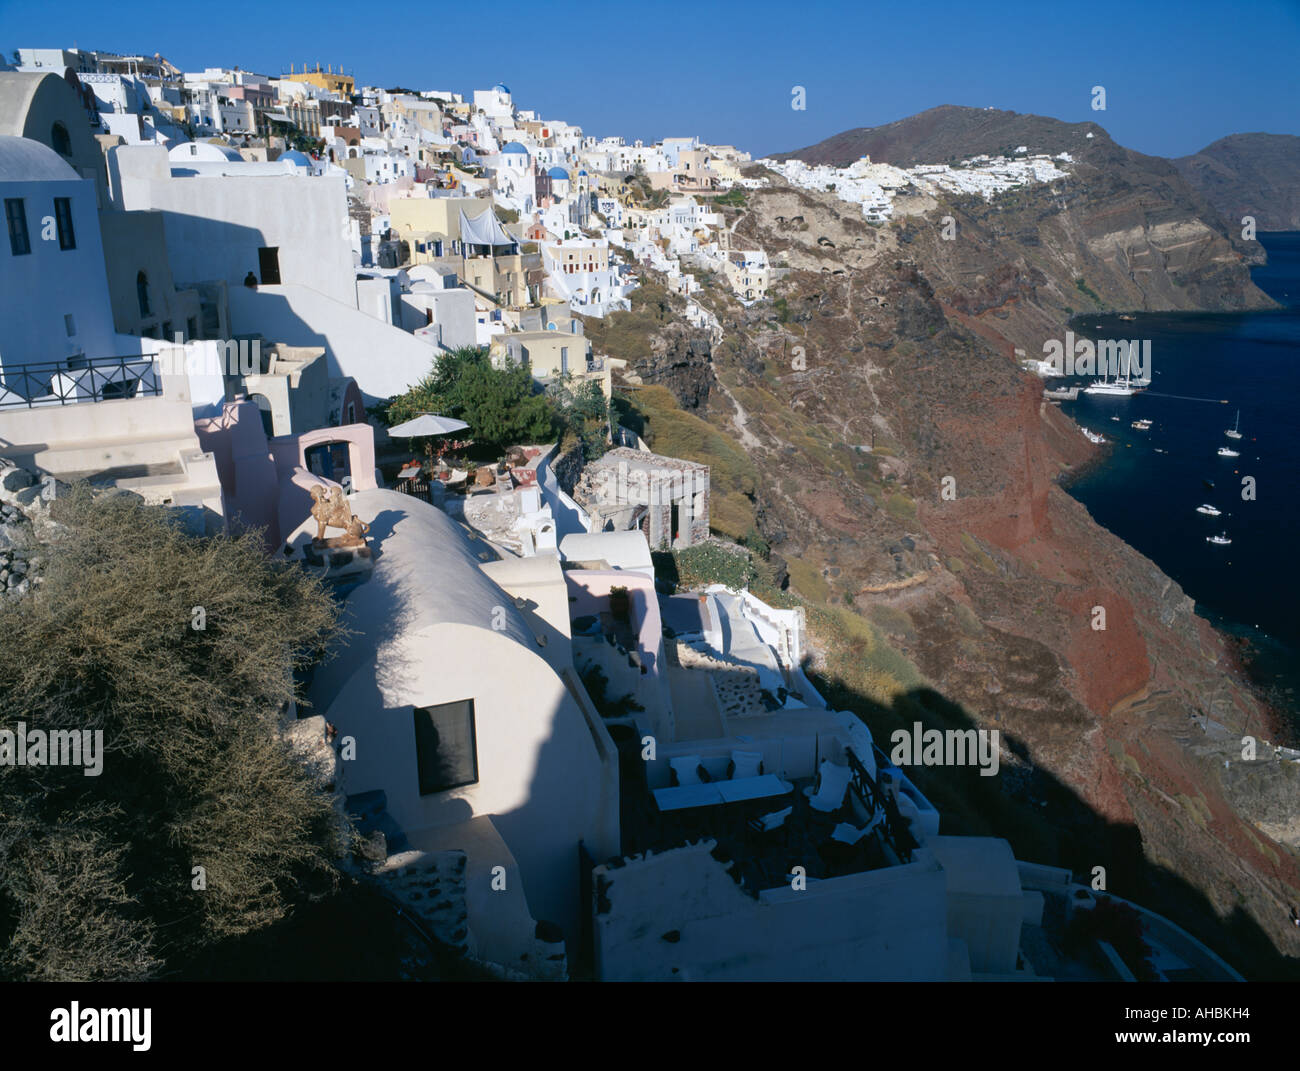 Die spektakulär gelegen Dorf Oia Santorini griechische Inseln Griechenlands Stockfoto